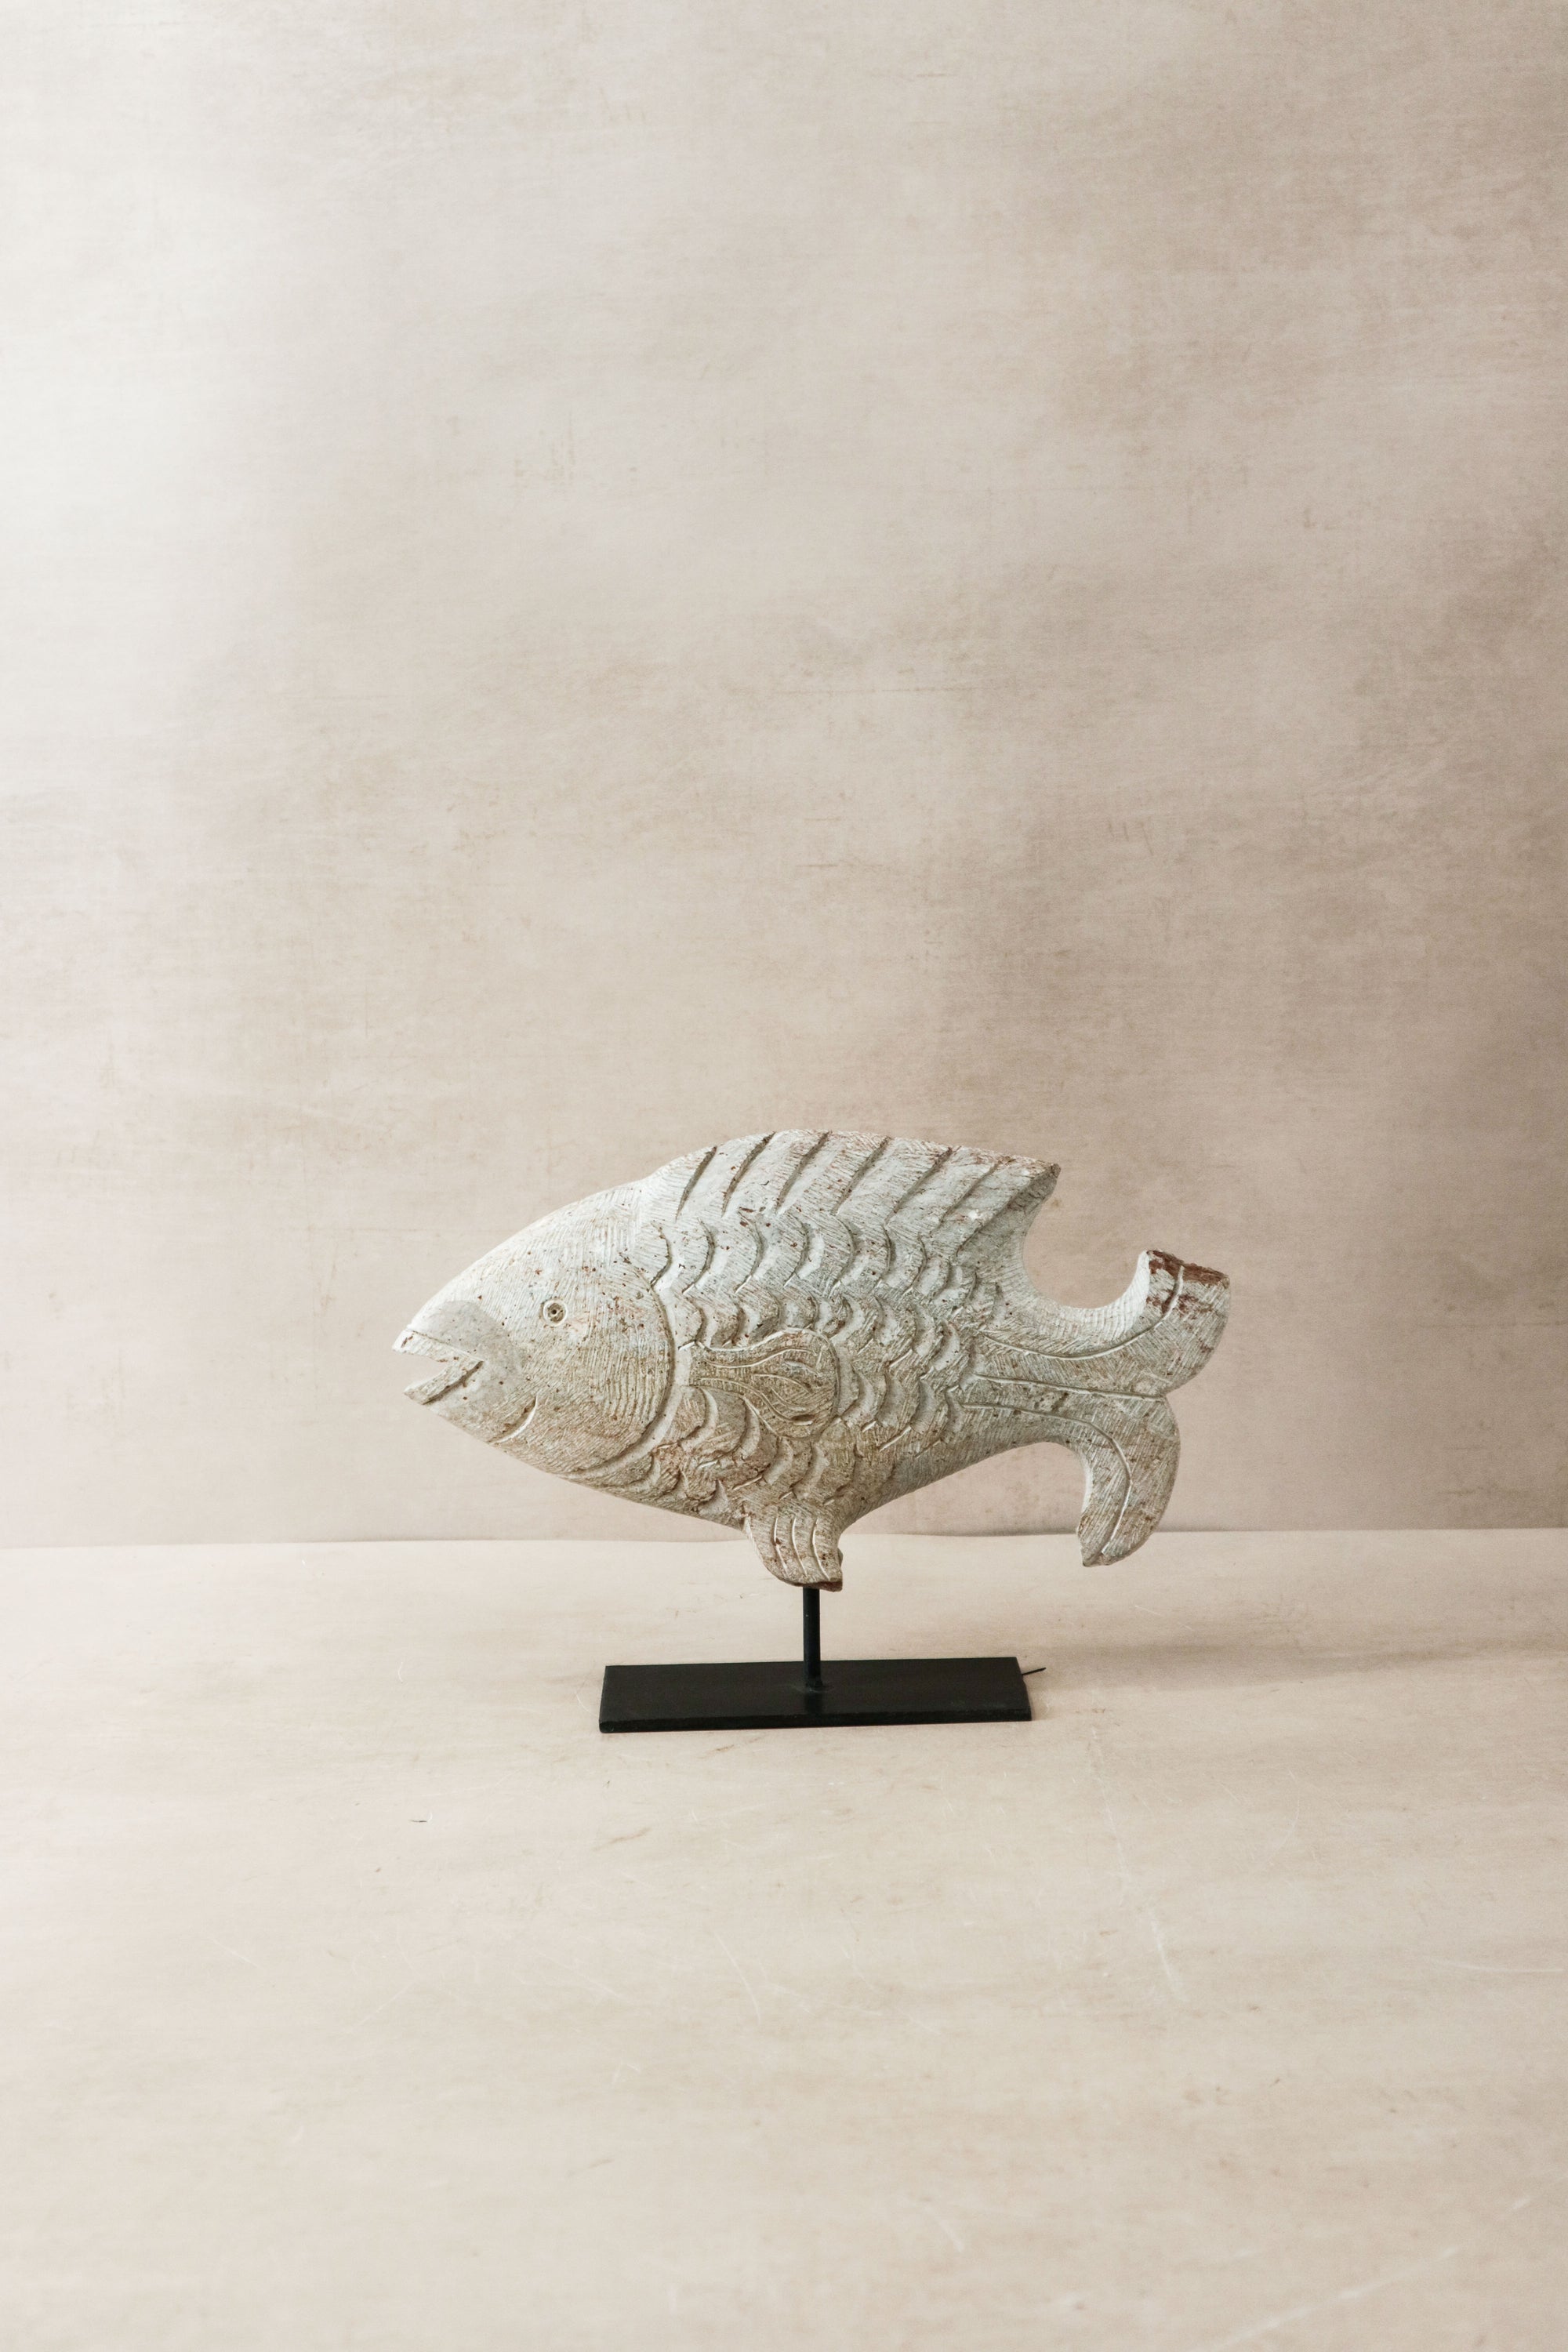 Stone Fish Sculpture - Zimbabwe - 36.1